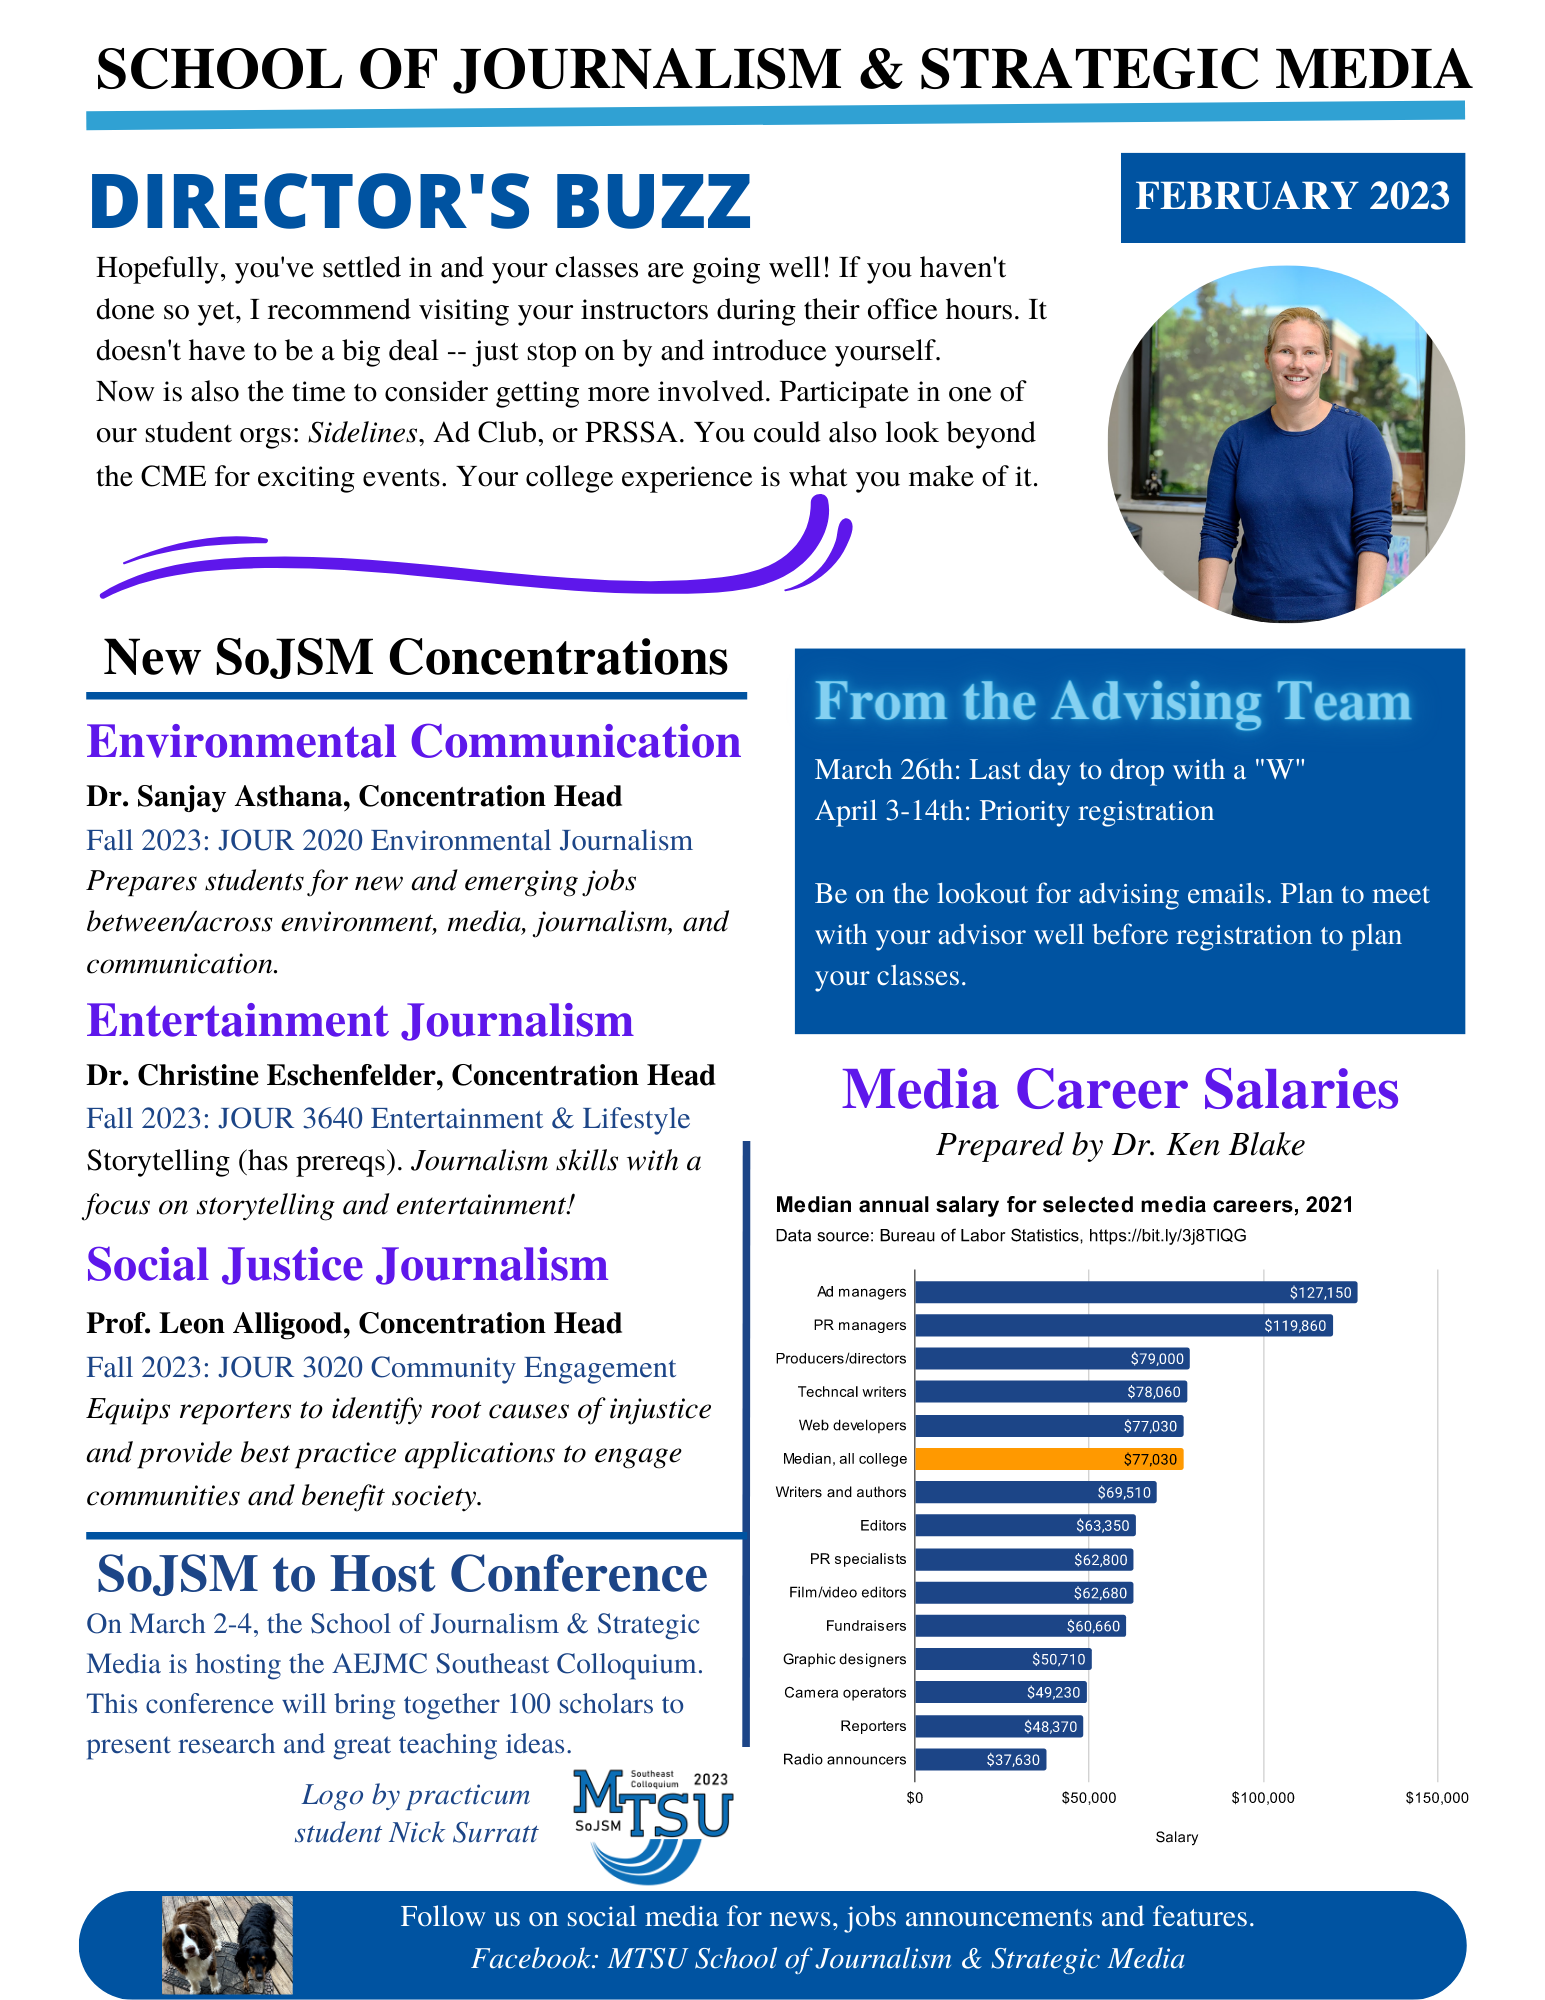 SoJSM February 2023 Newsletter